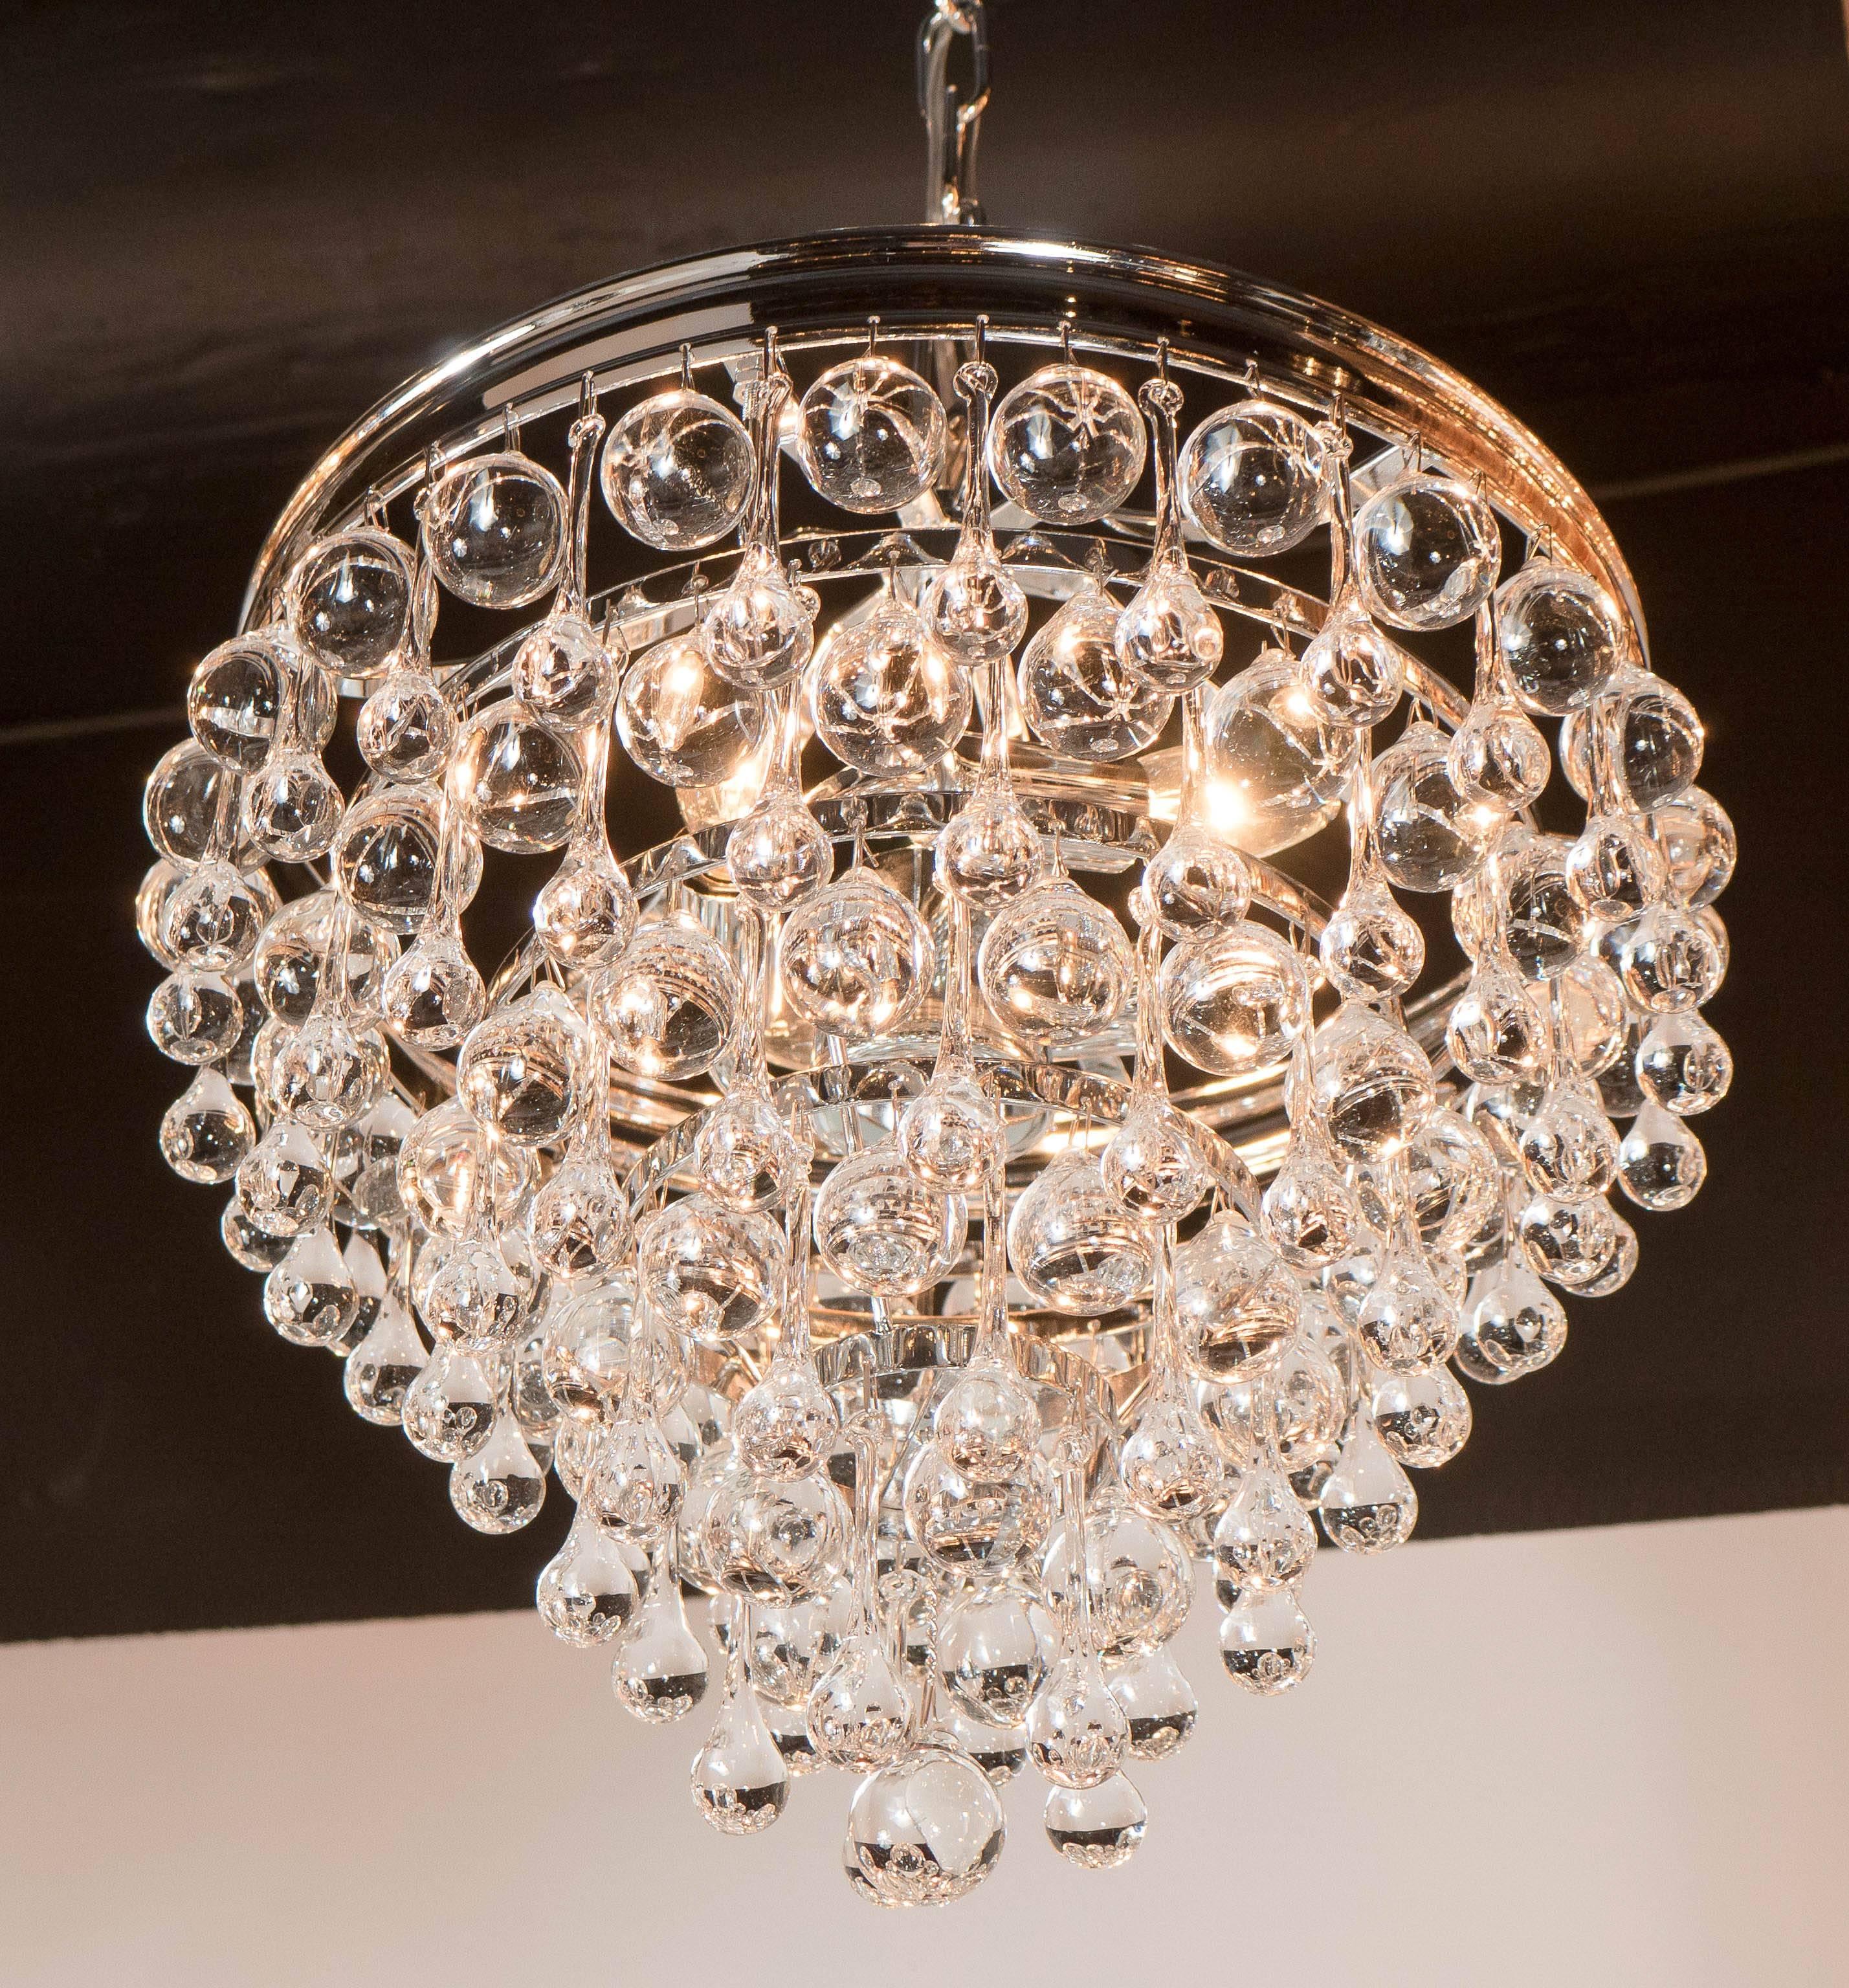 Un élégant lustre encastré avec des boules de cristal contrastantes et des segments de verre en forme de larme dans un motif radial. Le résultat est un effet très étincelant, typique du style et du glamour hollywoodiens. Le luminaire est en nickel